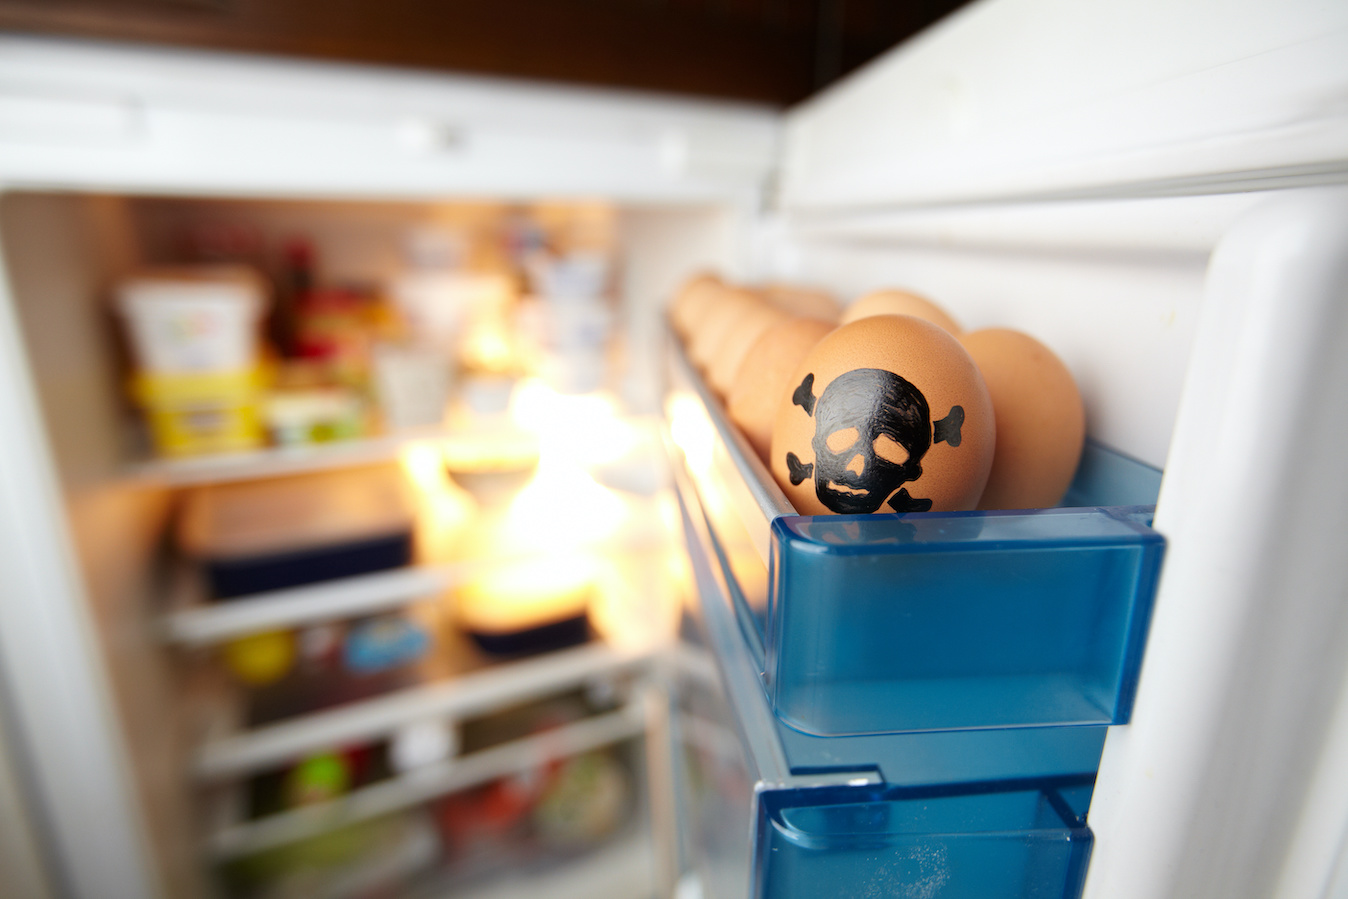 Ei mit Totenkopf im Kühlschrank